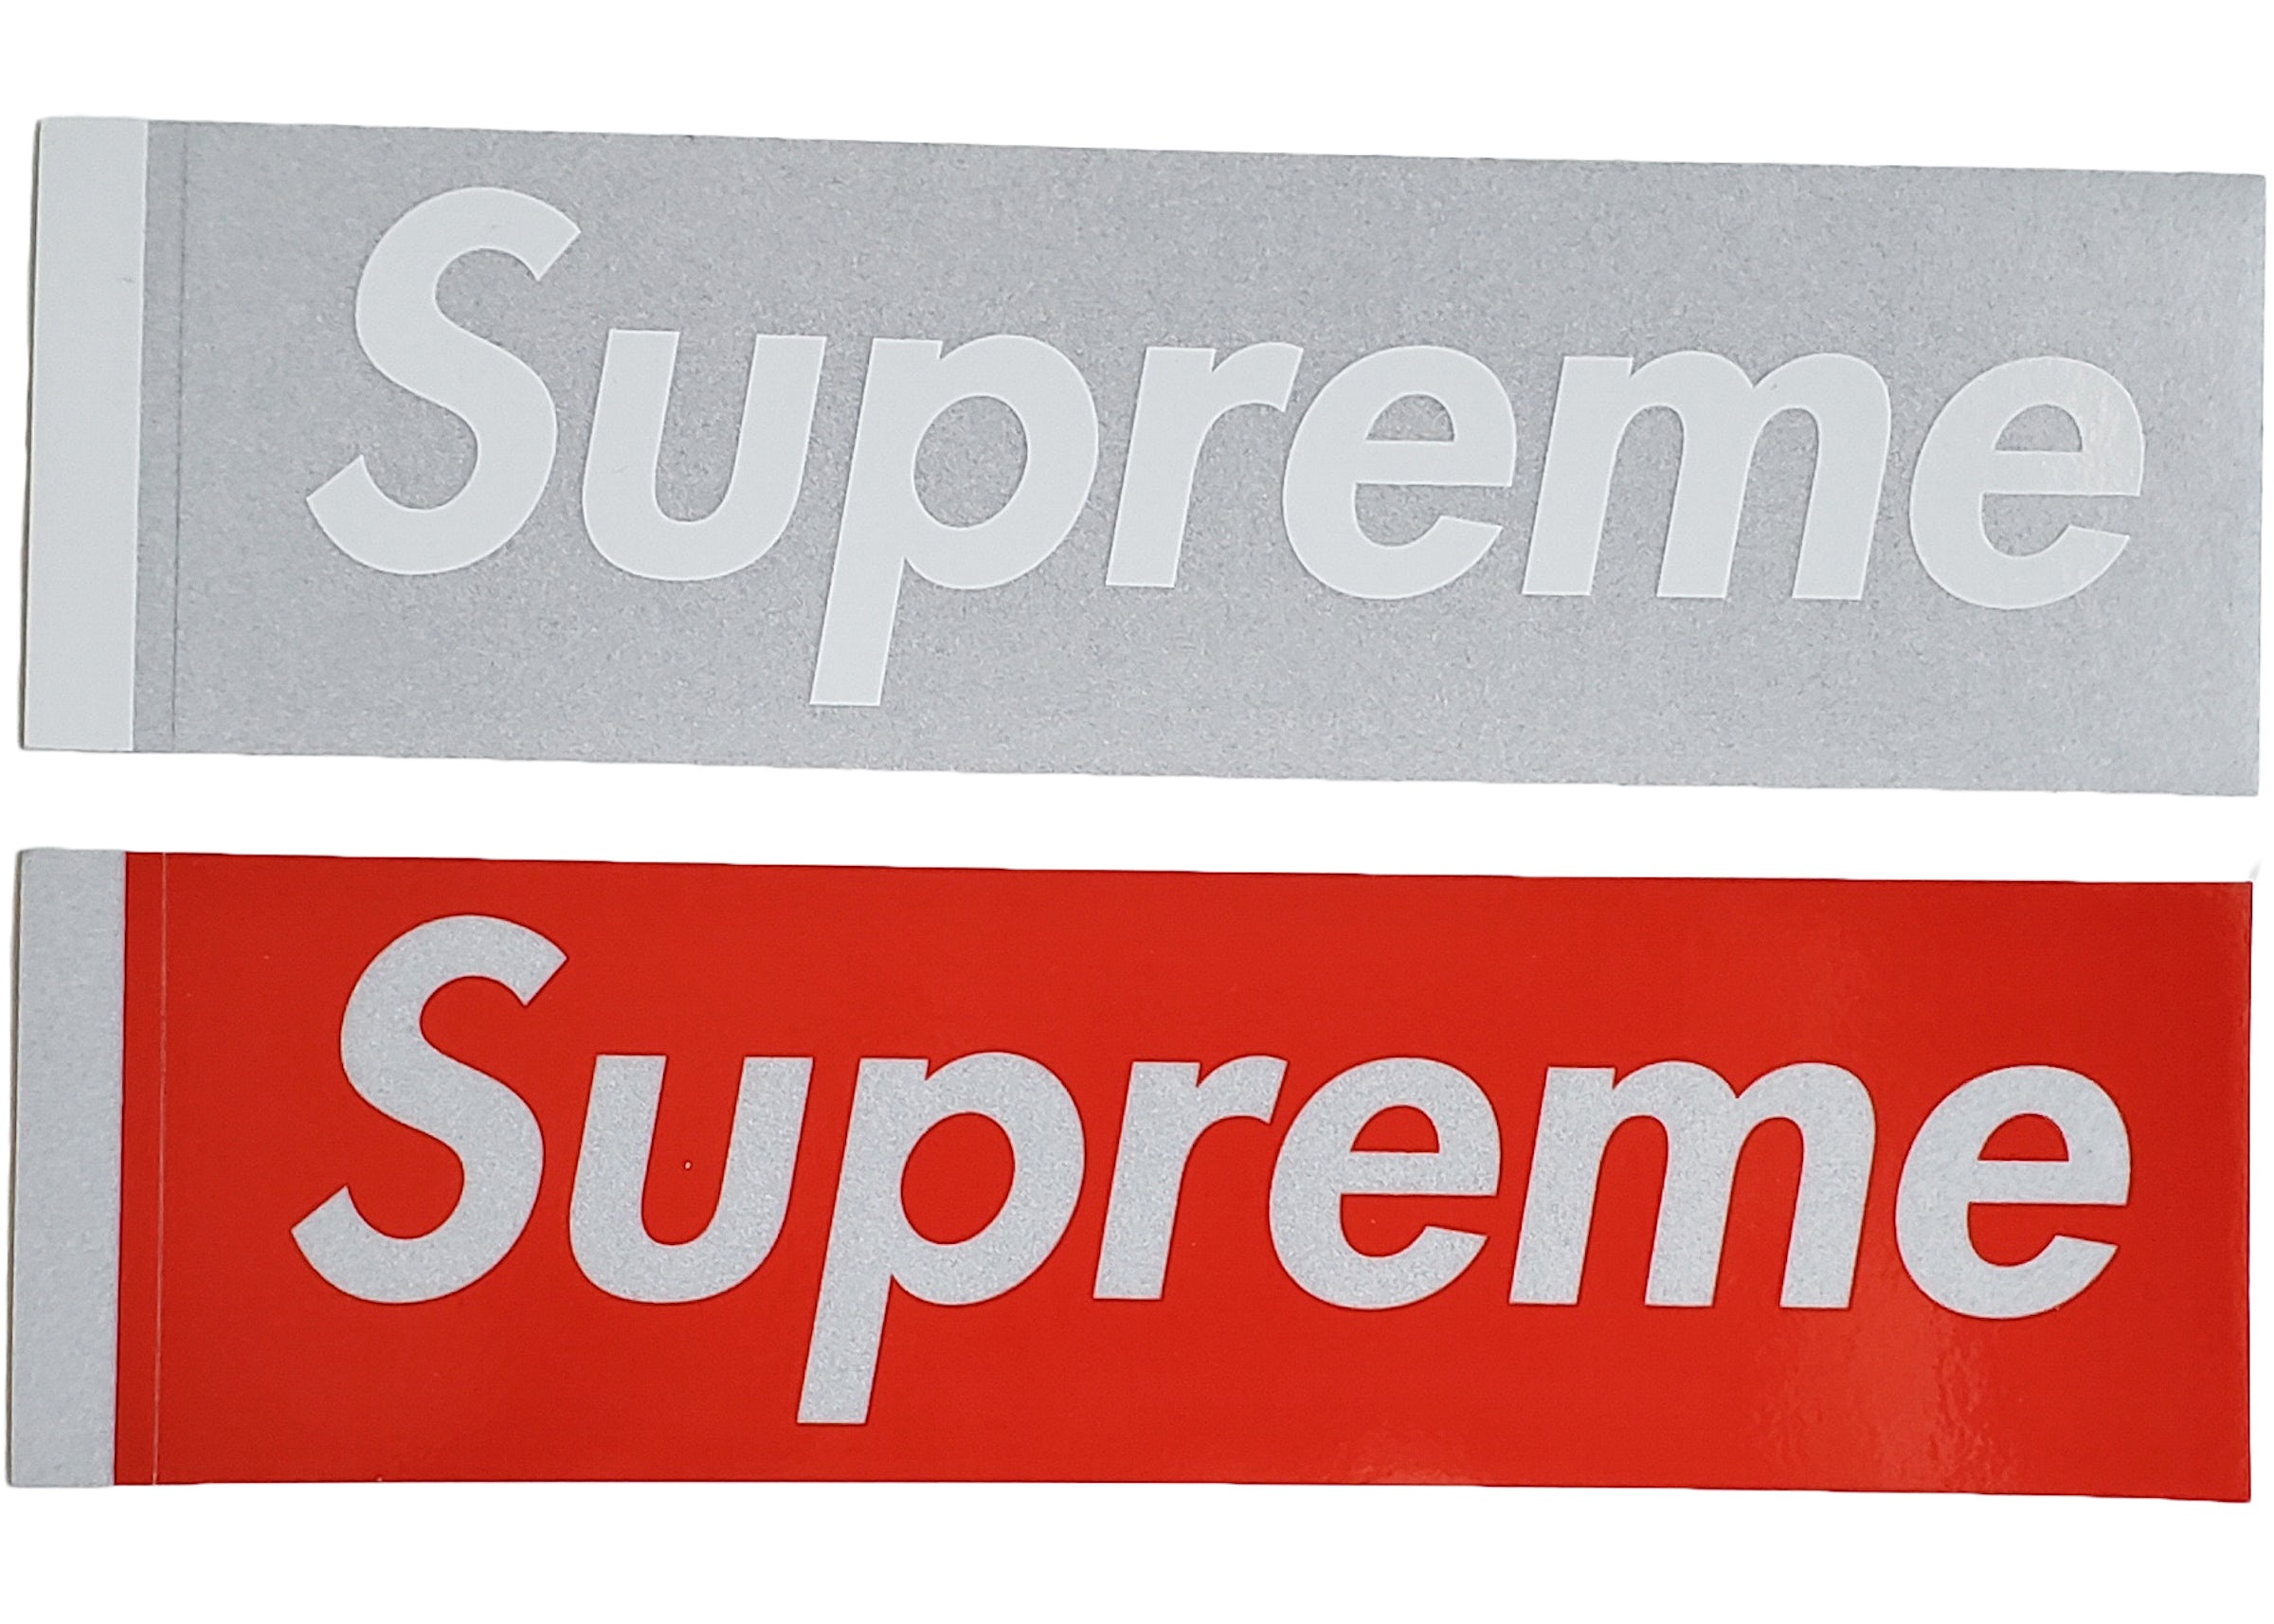 Supreme Playboy Louis Vuitton Box Logo Stickers | Supreme Stickers